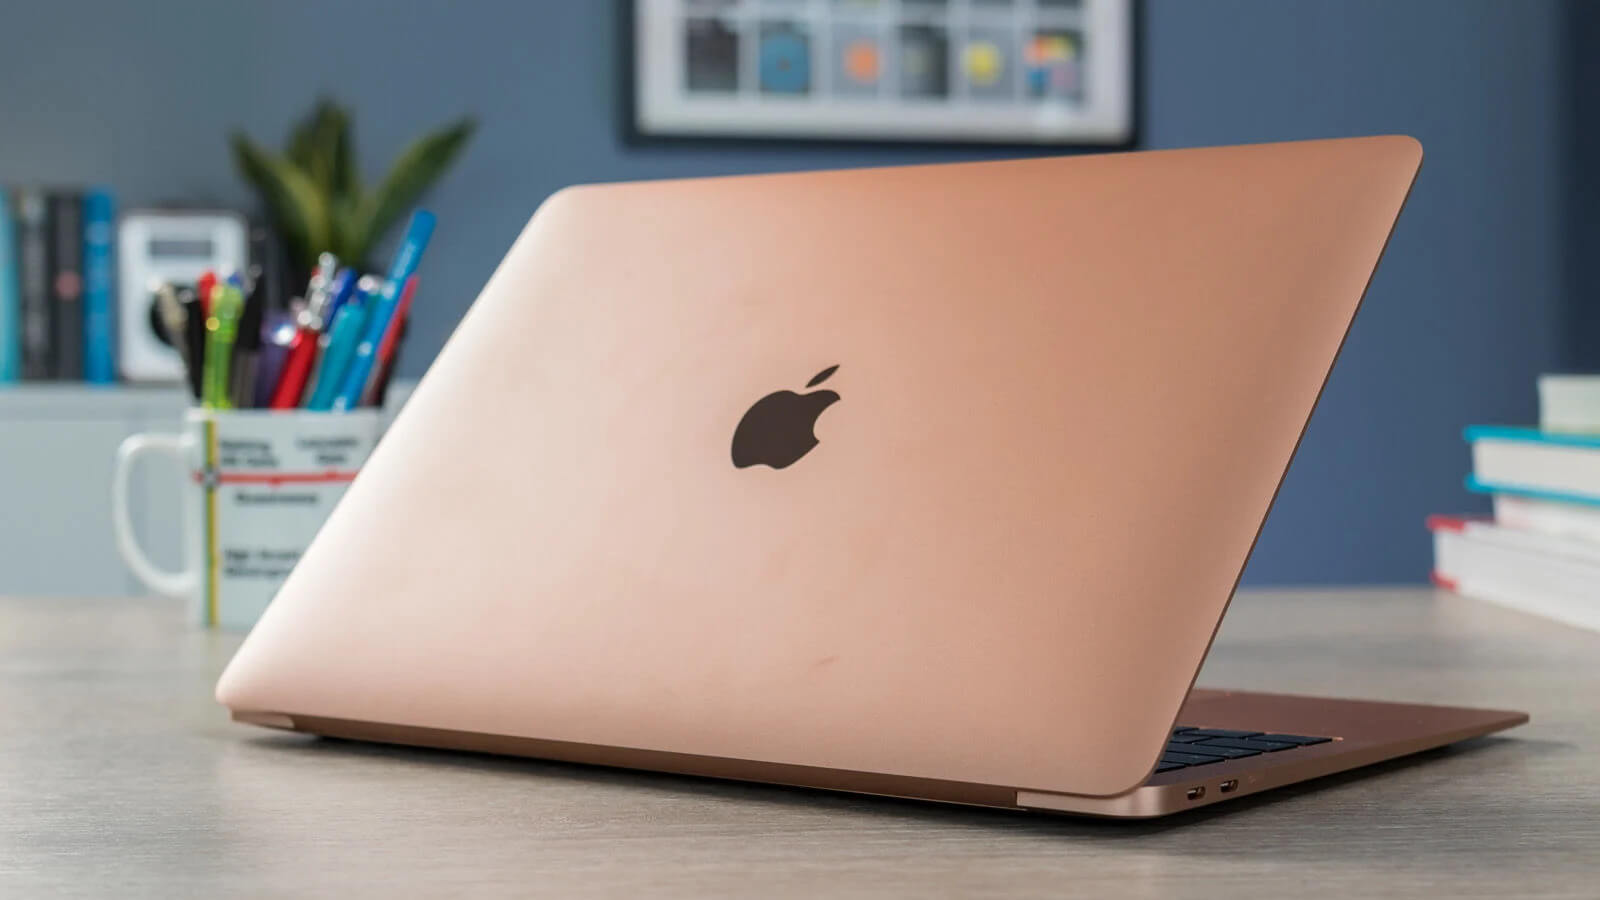 Cùng chiêm ngưỡng lại phiên bản Macbook Air 2020 màu hồng 1 thời